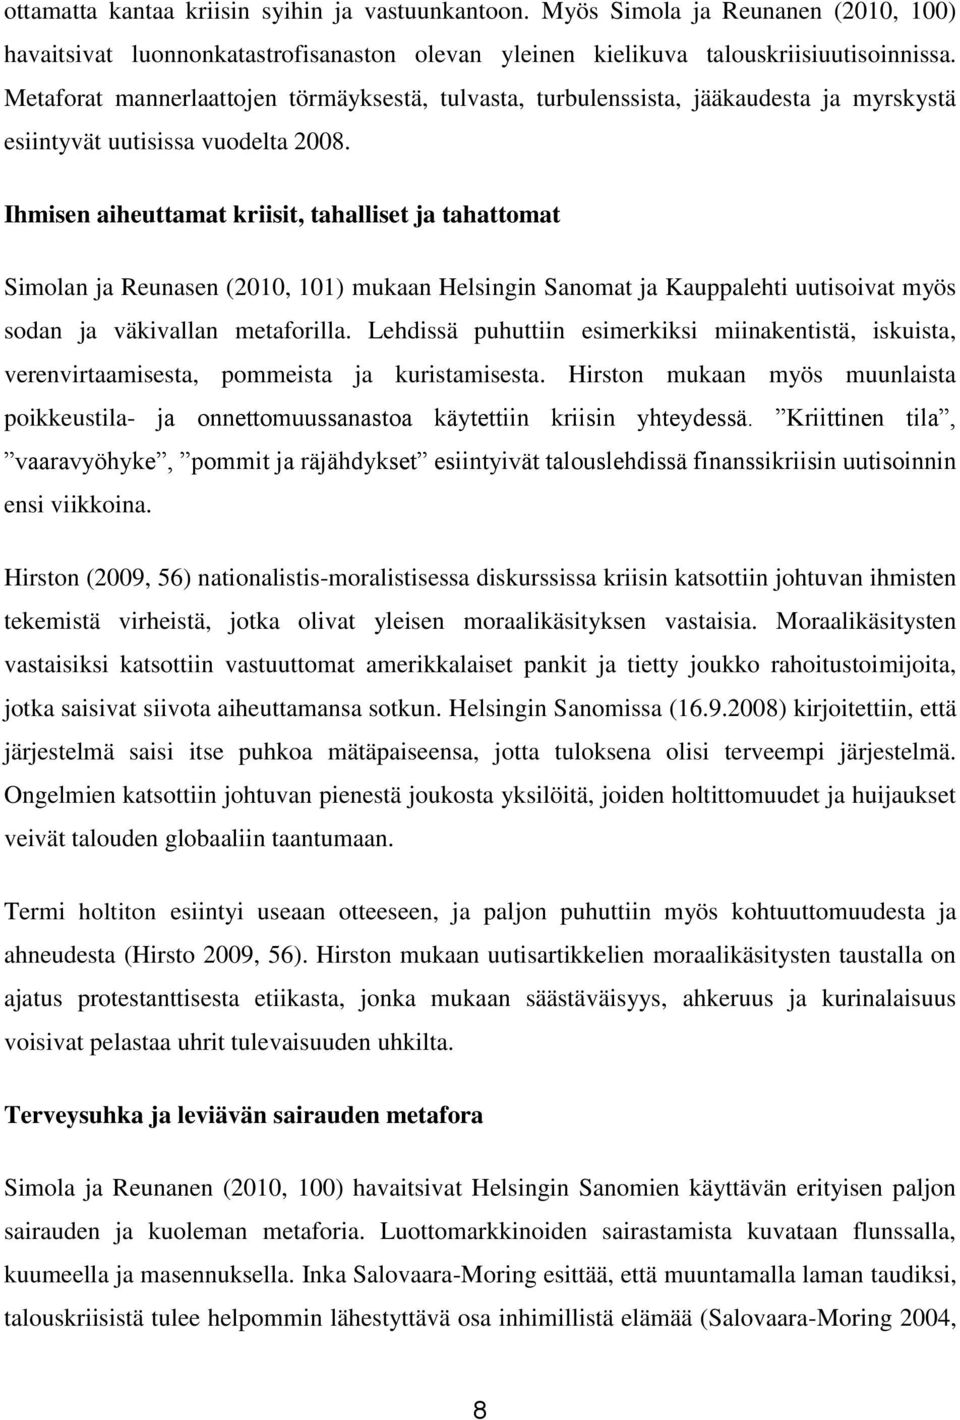 Ihmisen aiheuttamat kriisit, tahalliset ja tahattomat Simolan ja Reunasen (2010, 101) mukaan Helsingin Sanomat ja Kauppalehti uutisoivat myös sodan ja väkivallan metaforilla.